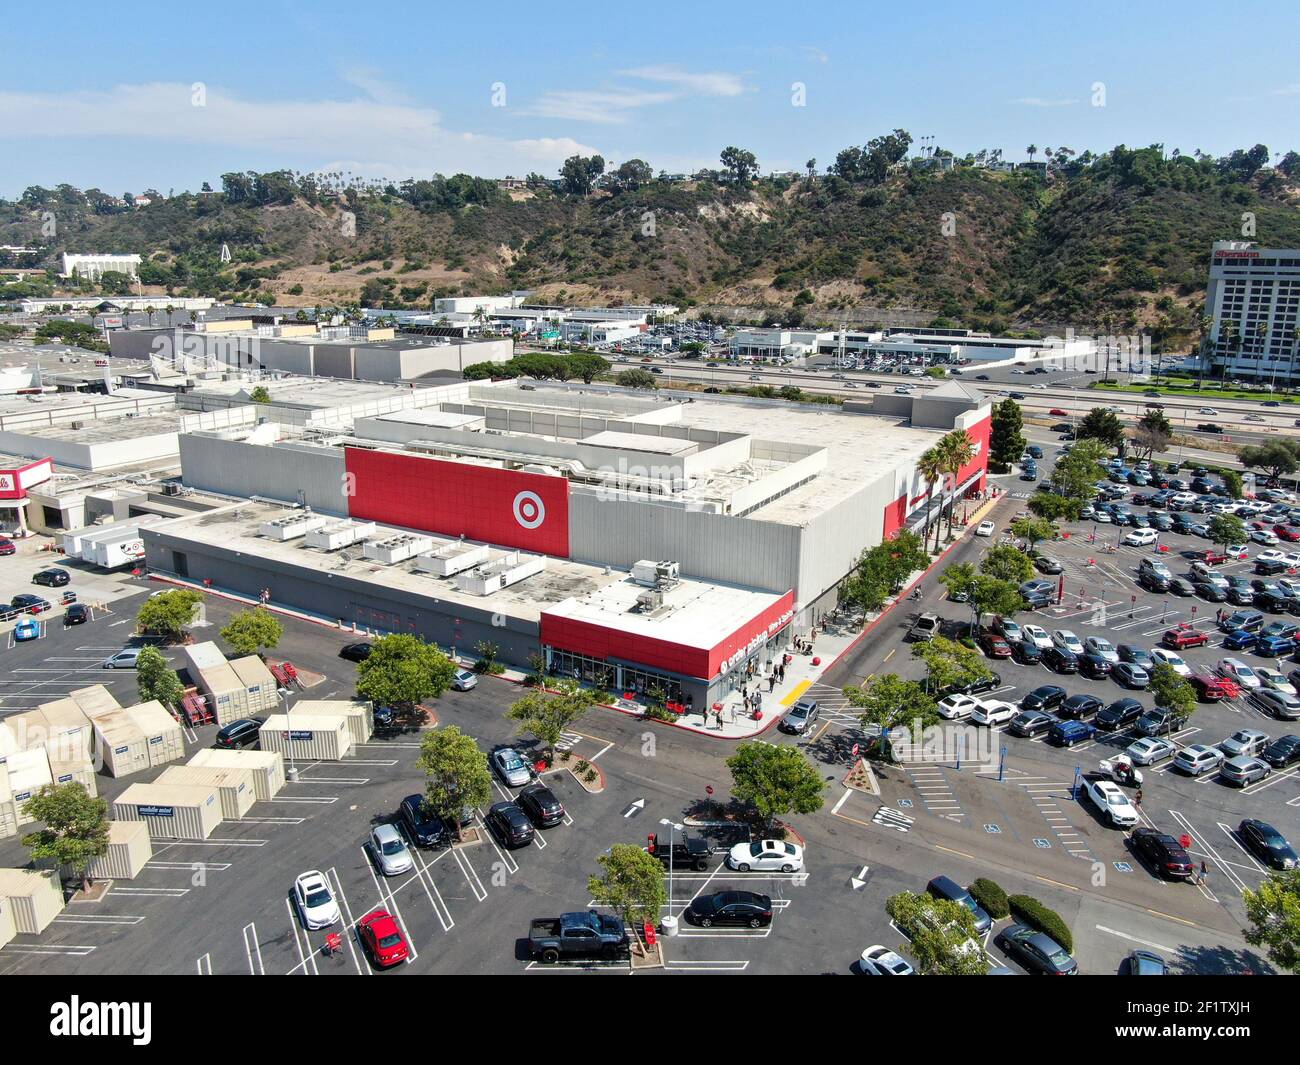 Zielmarkt für Einzelhandelsgeschäft in Kalifornien Stockfoto